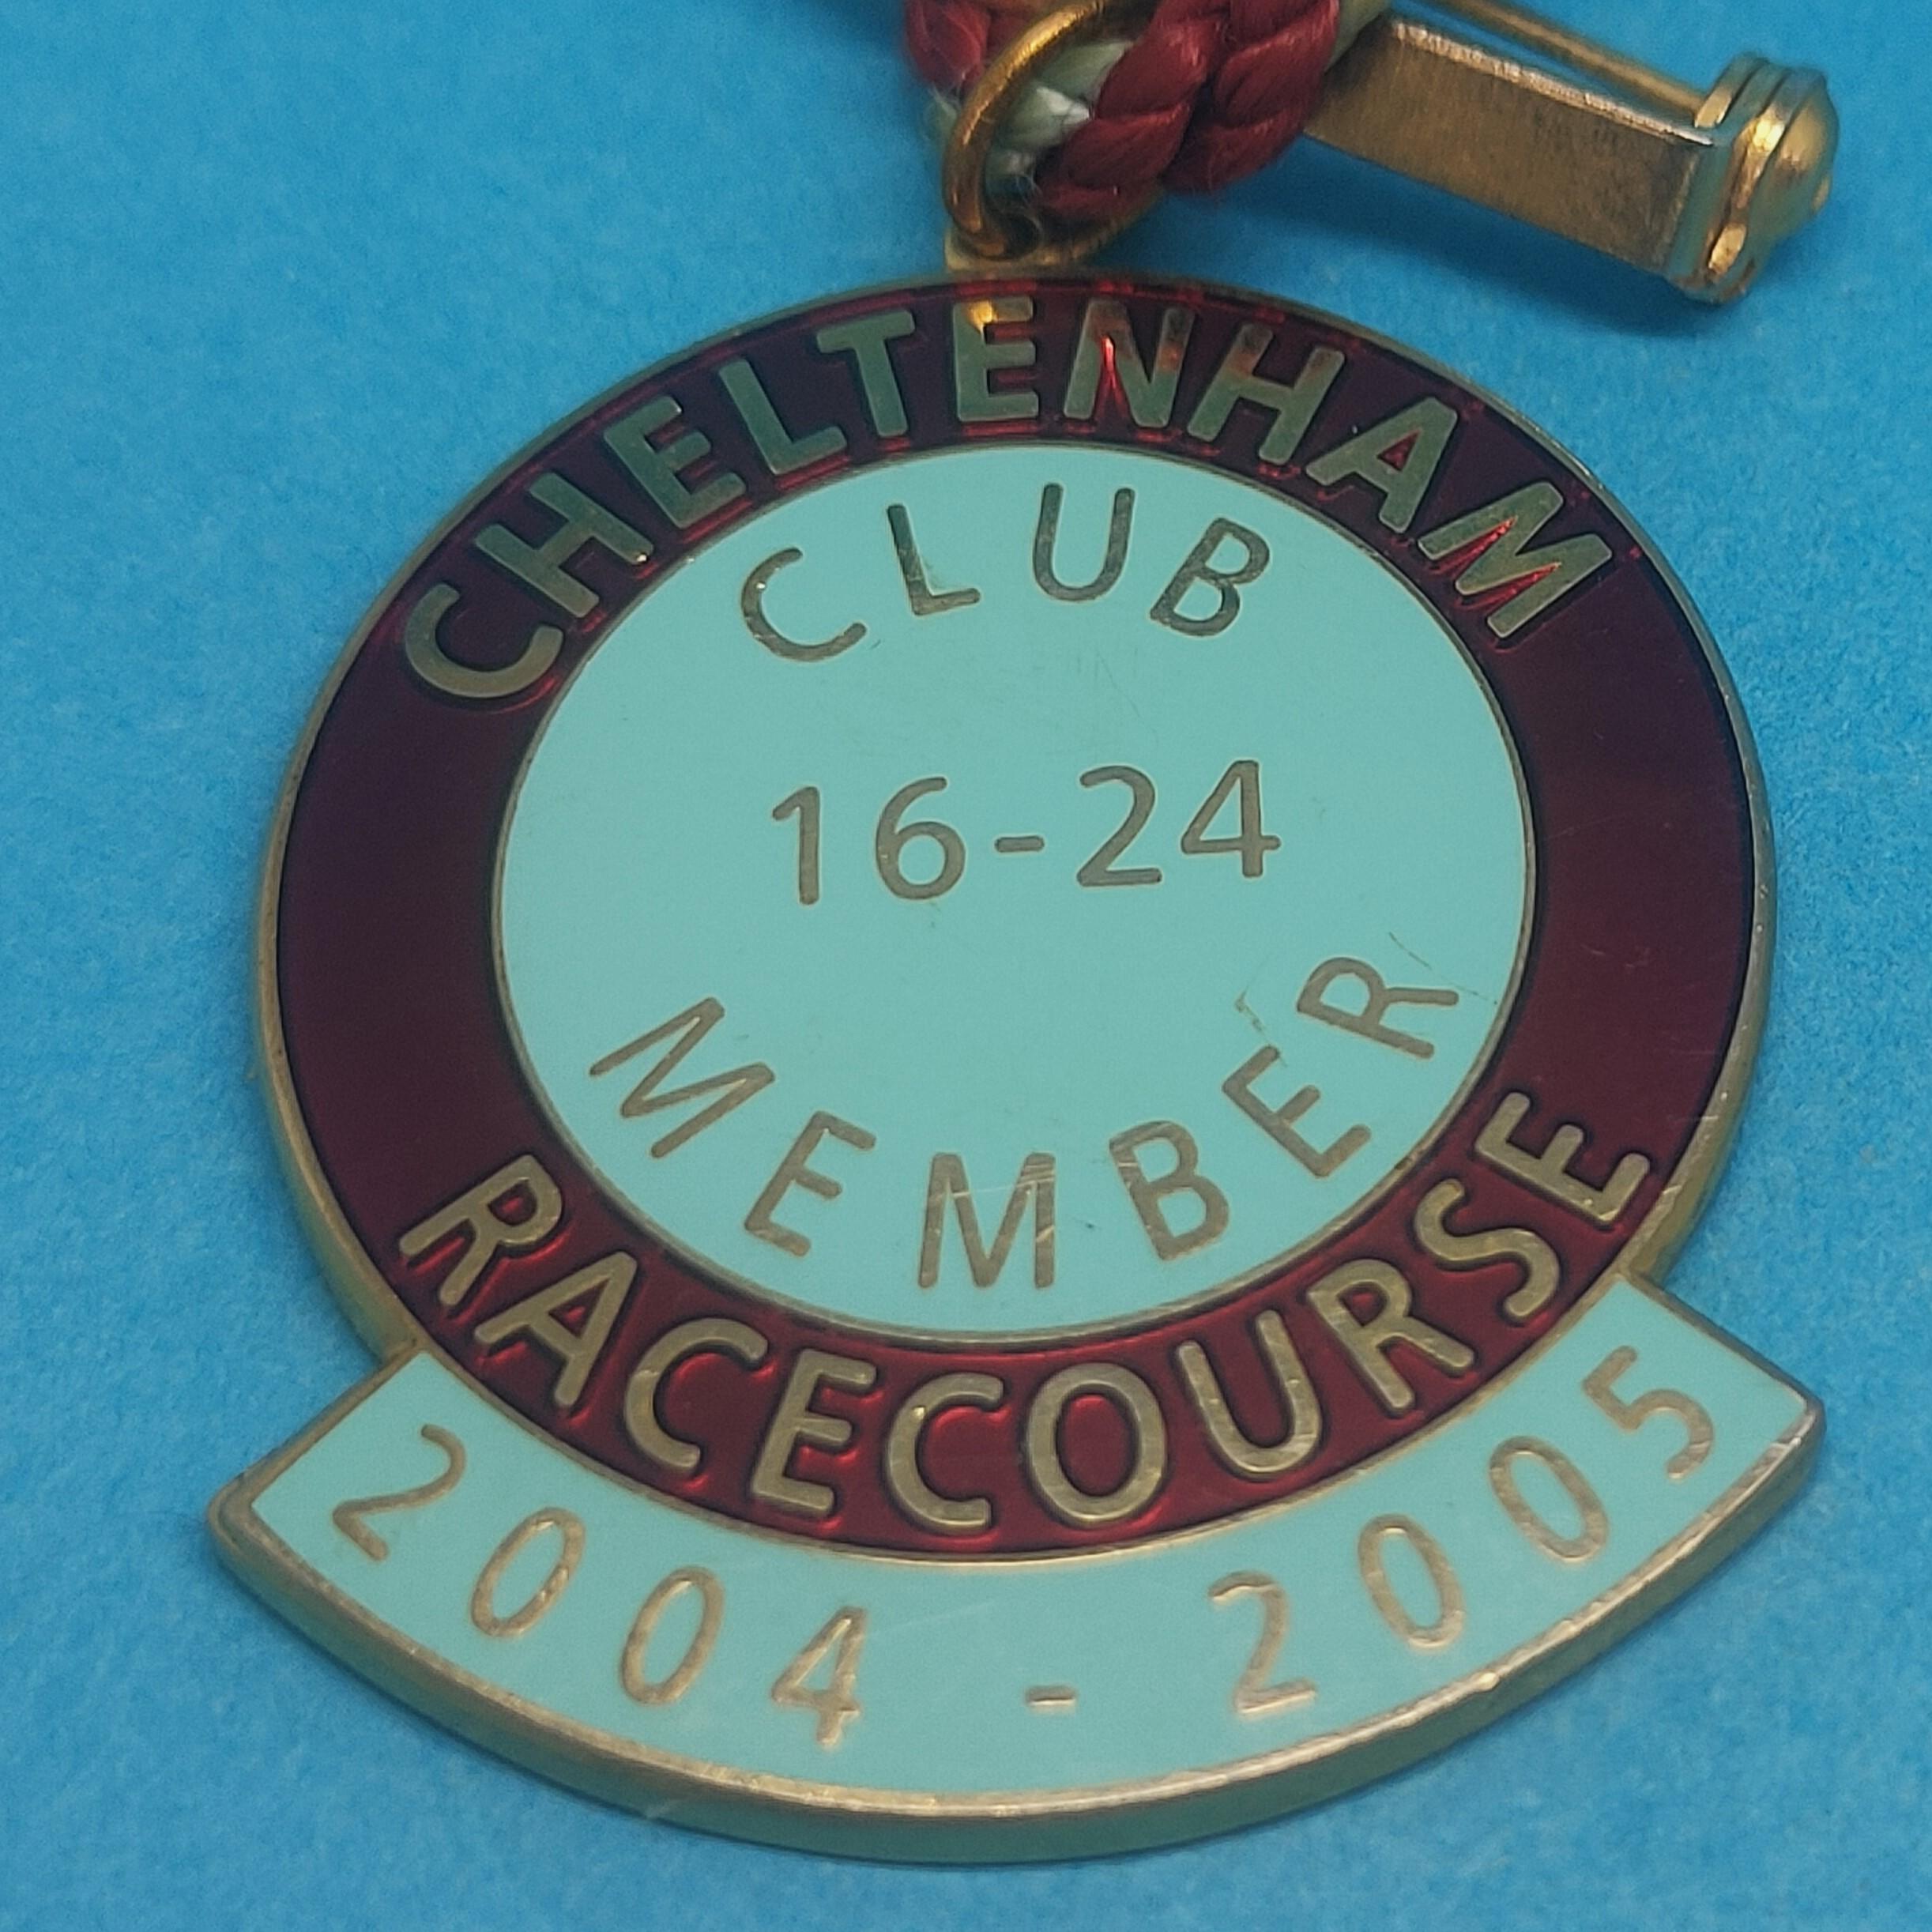 Cheltenham 2004 / 2005 Club 16 to 24